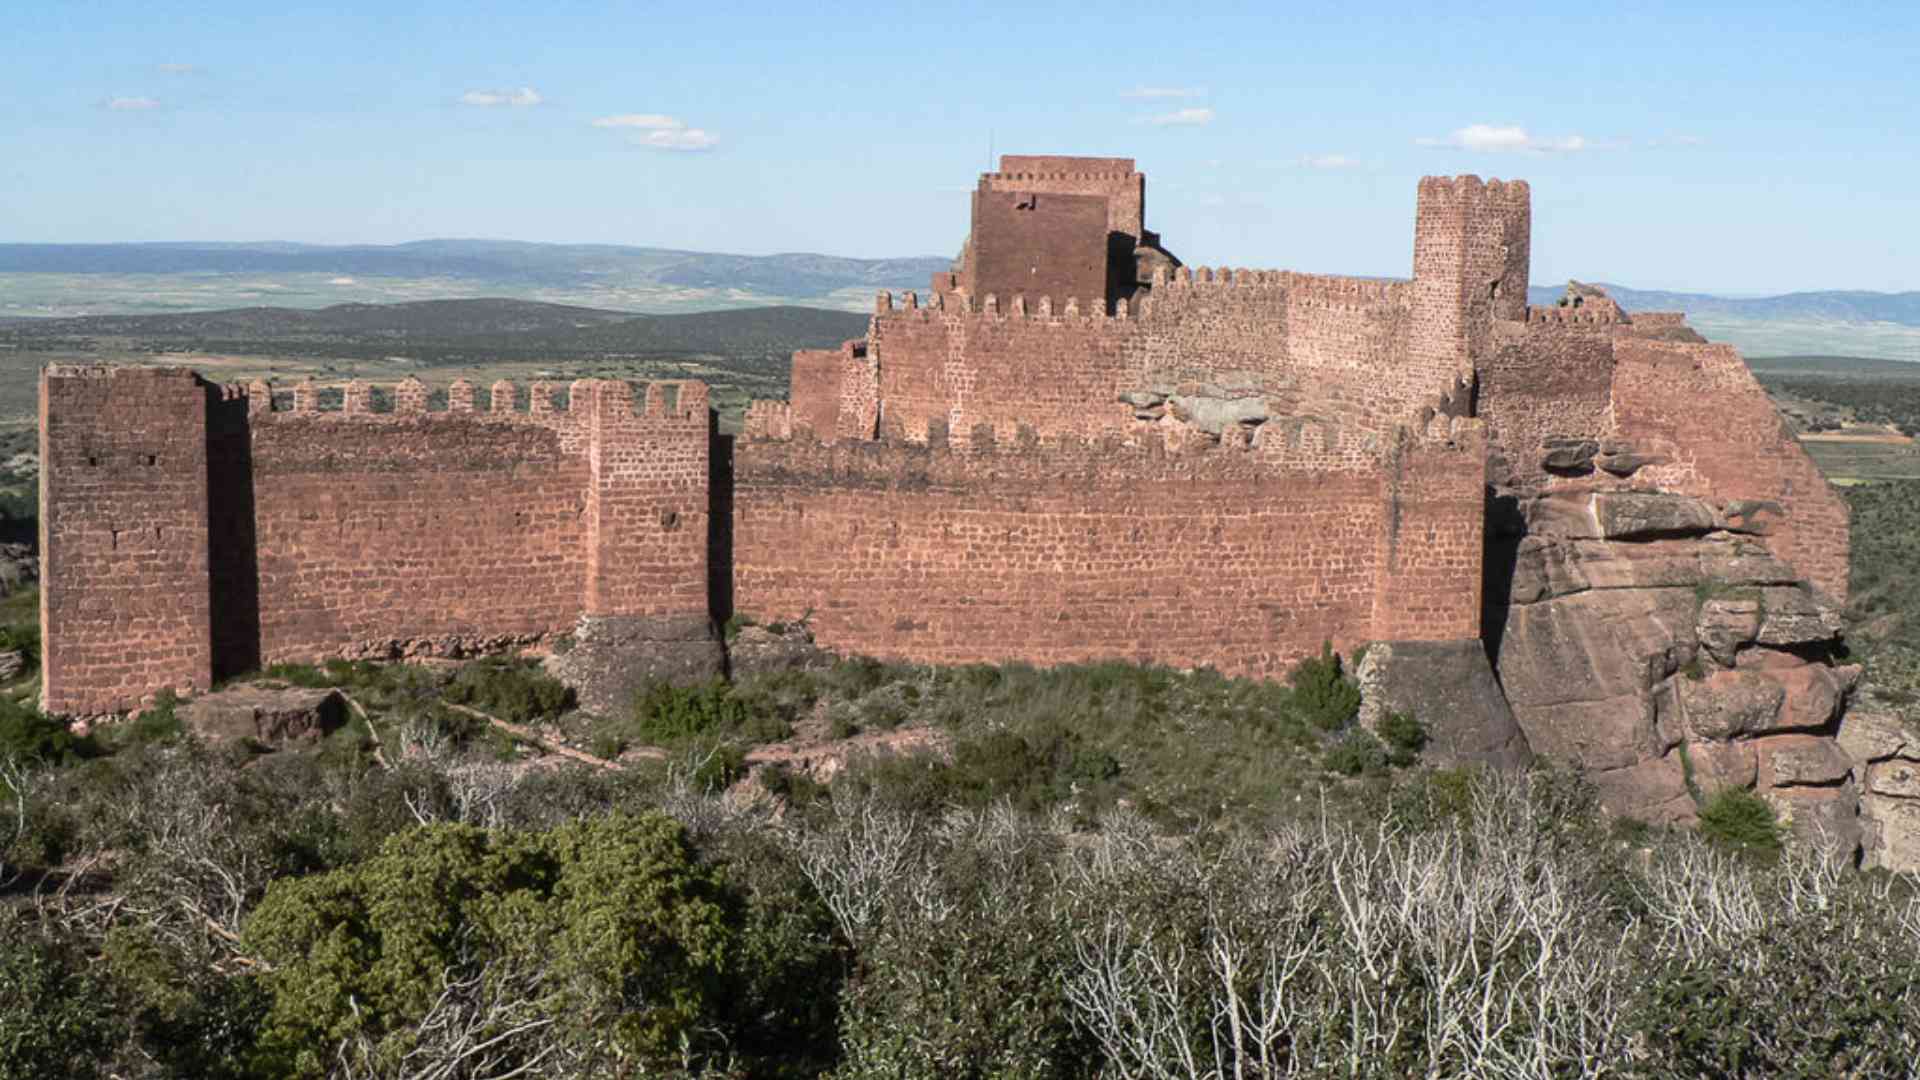 El increíble castillo construido sobre una roca que tuvo un papel importantísimo en la historia